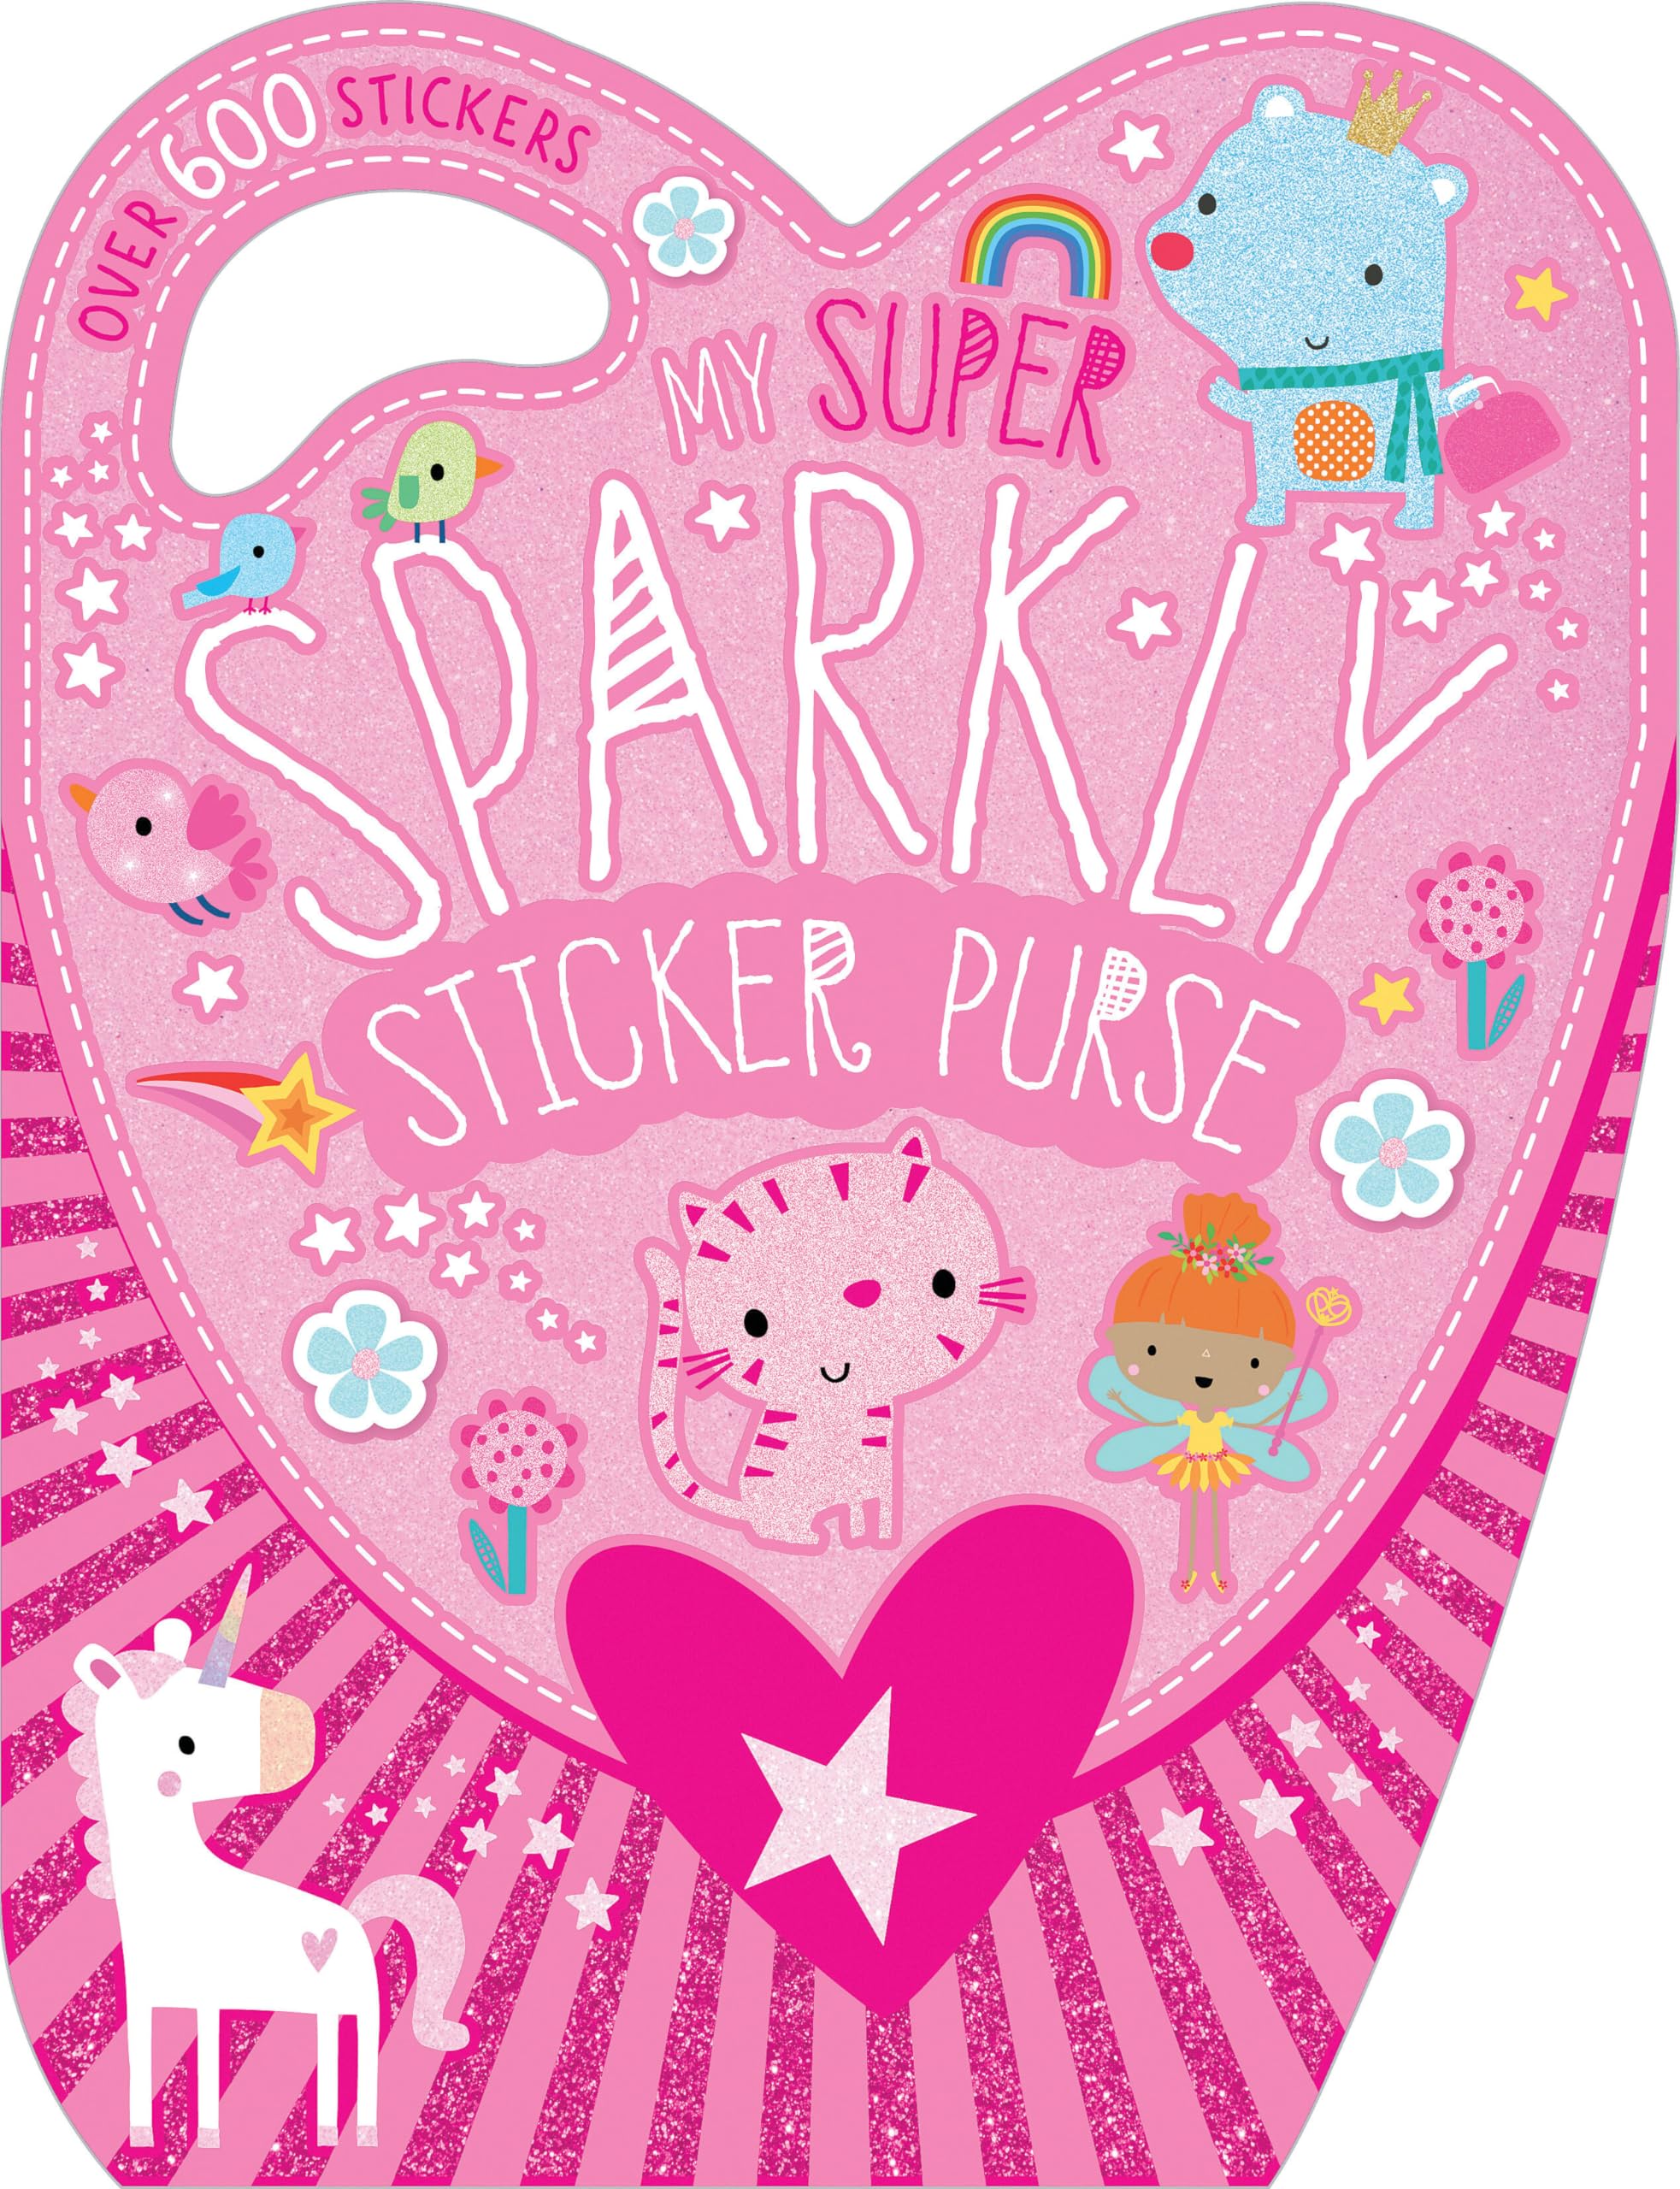 My Super Sparkly Sticker Purse - Afbeelding 1 van 1